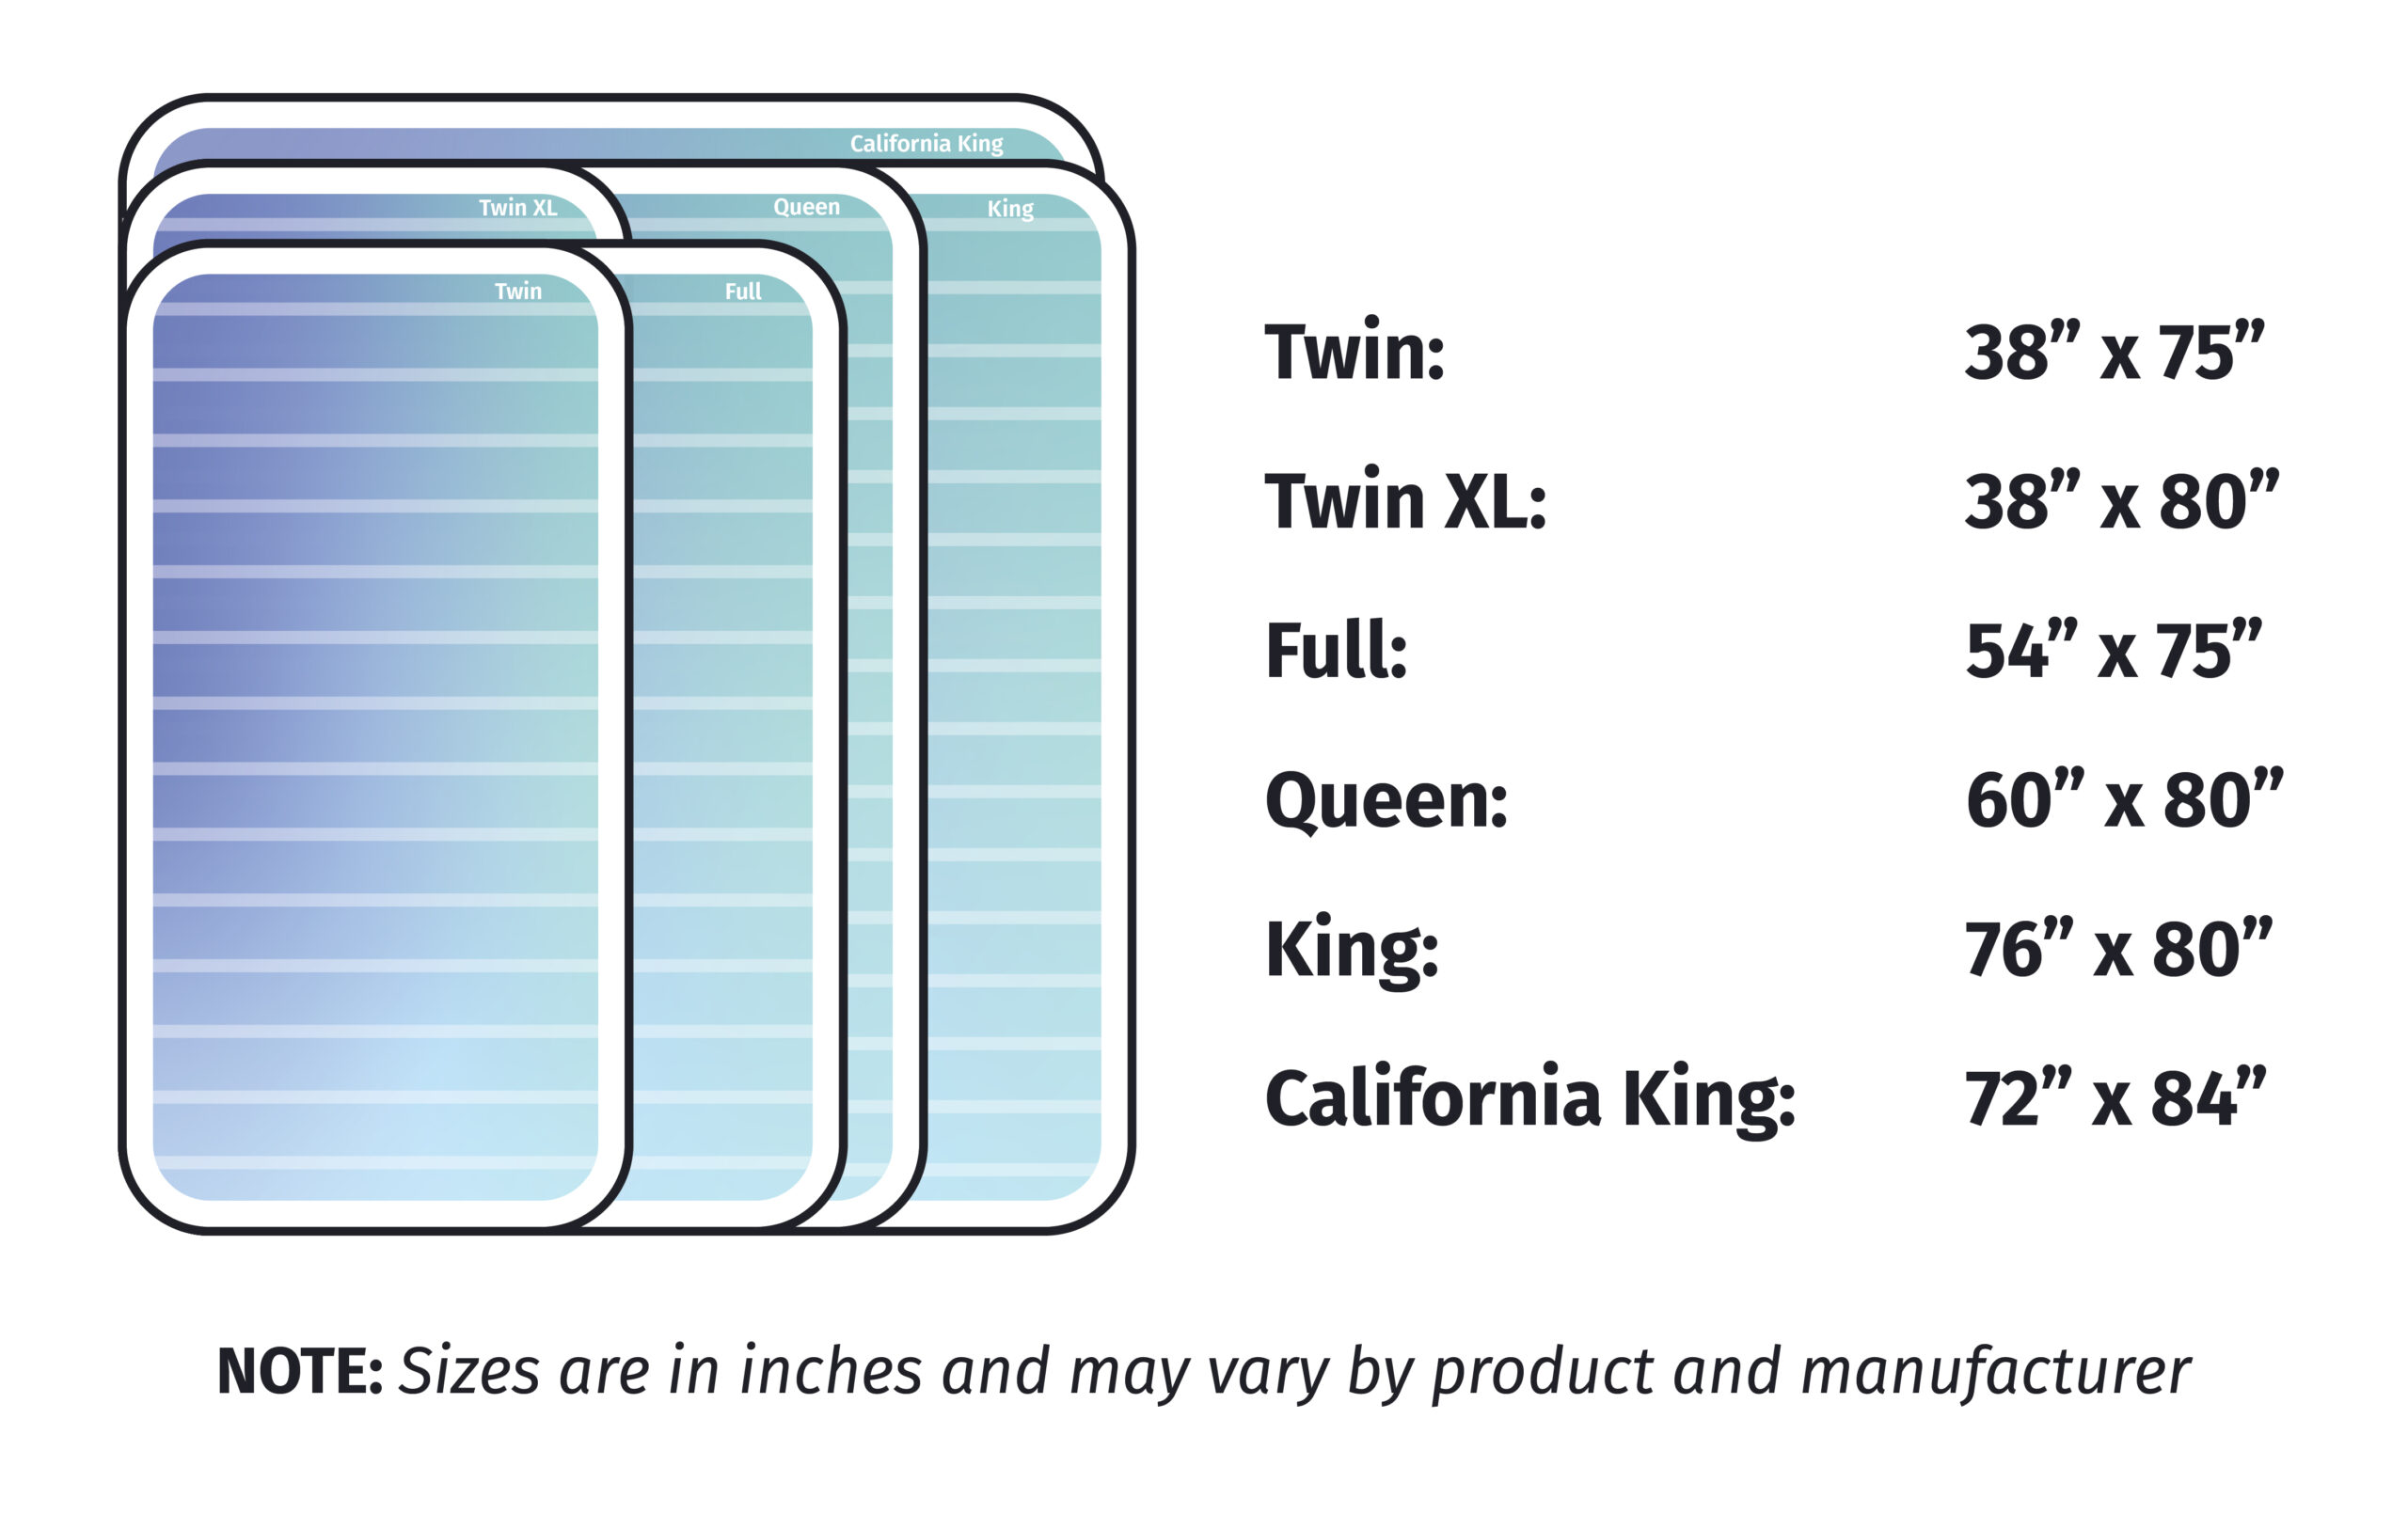 King vs Queen Mattress Size Guide